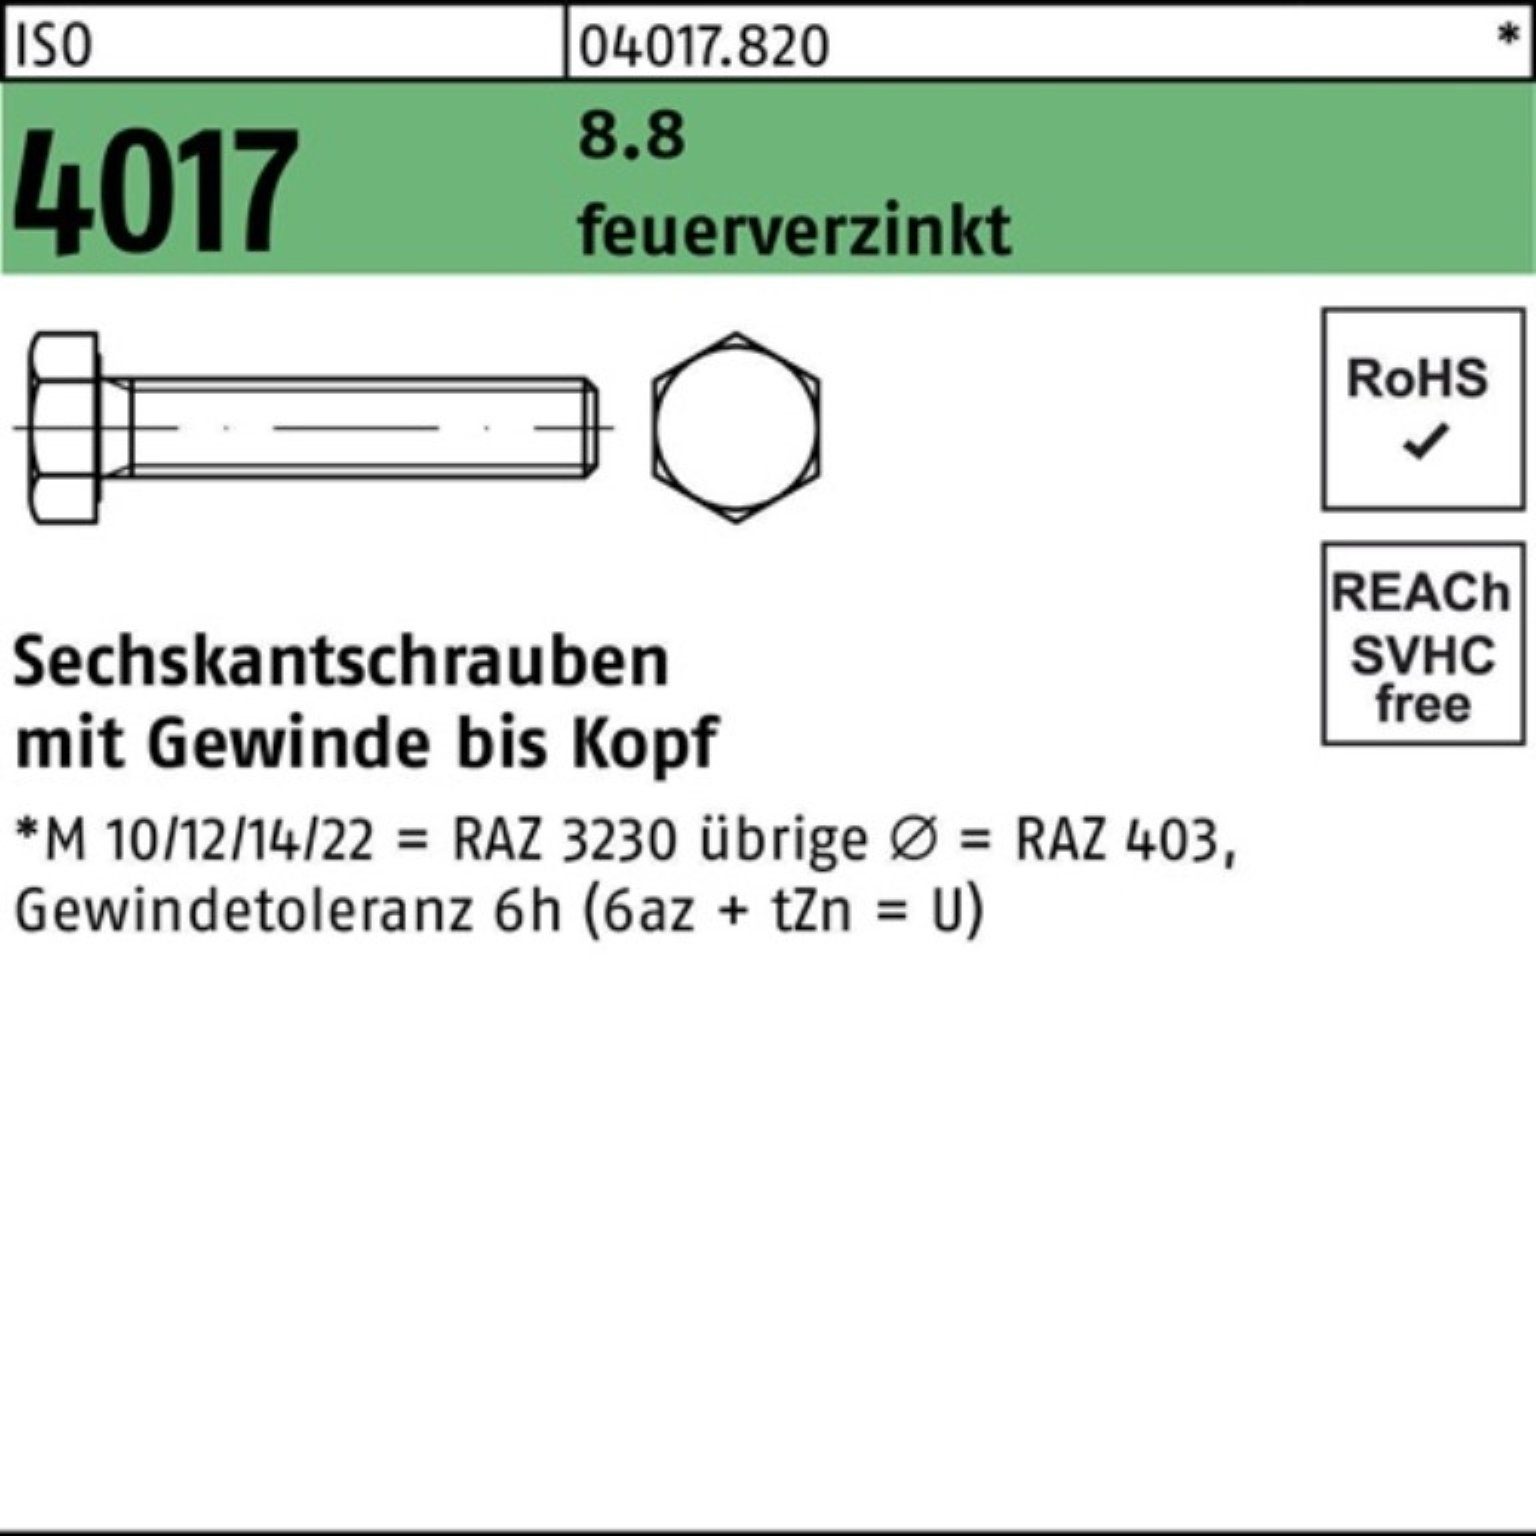 Bufab Sechskantschraube 100er Pack Sechskantschraube ISO 4017 VG M10x 35 8.8 feuerverz. 100 St